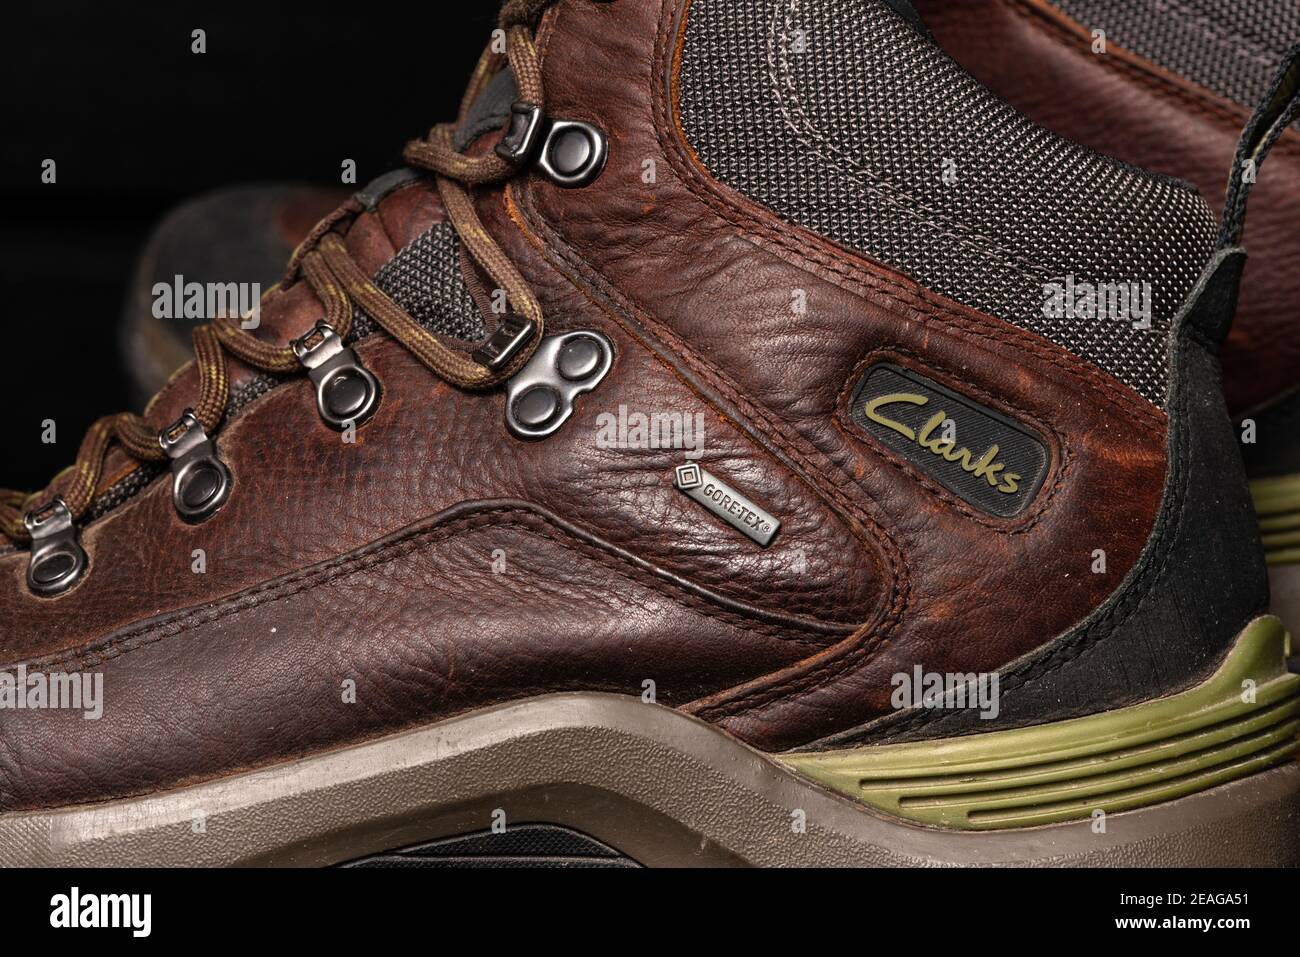 Chaussures Clarks. Clarks Outdoor Gore-Tex imperméable cuir marron pour  homme bottes de randonnée gros plan Photo Stock - Alamy